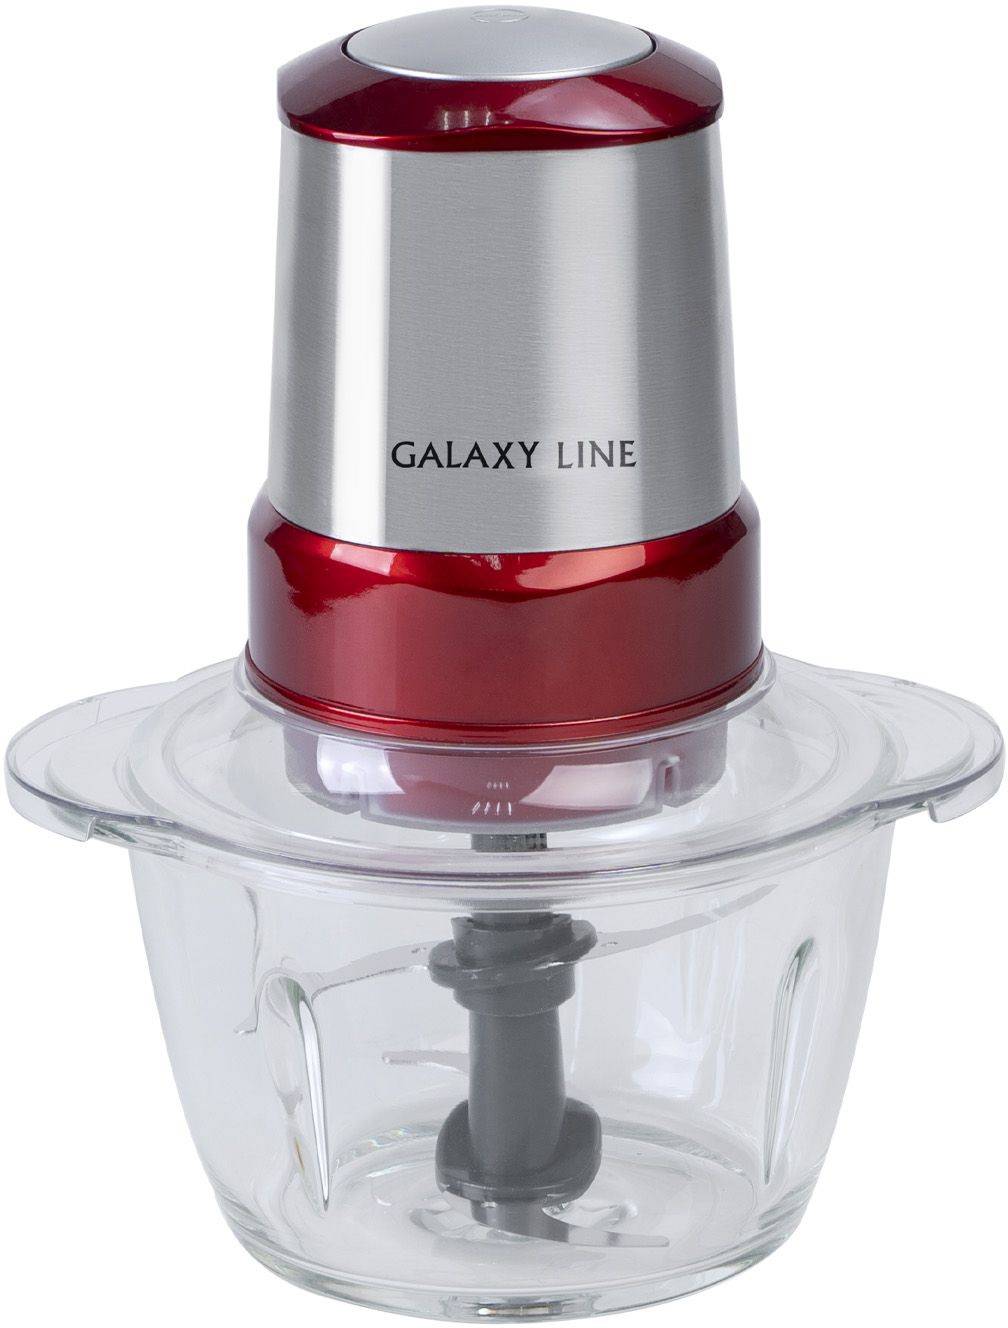 Измельчитель электрический Galaxy Line GL 2354 серебристый/красный (гл2354л)